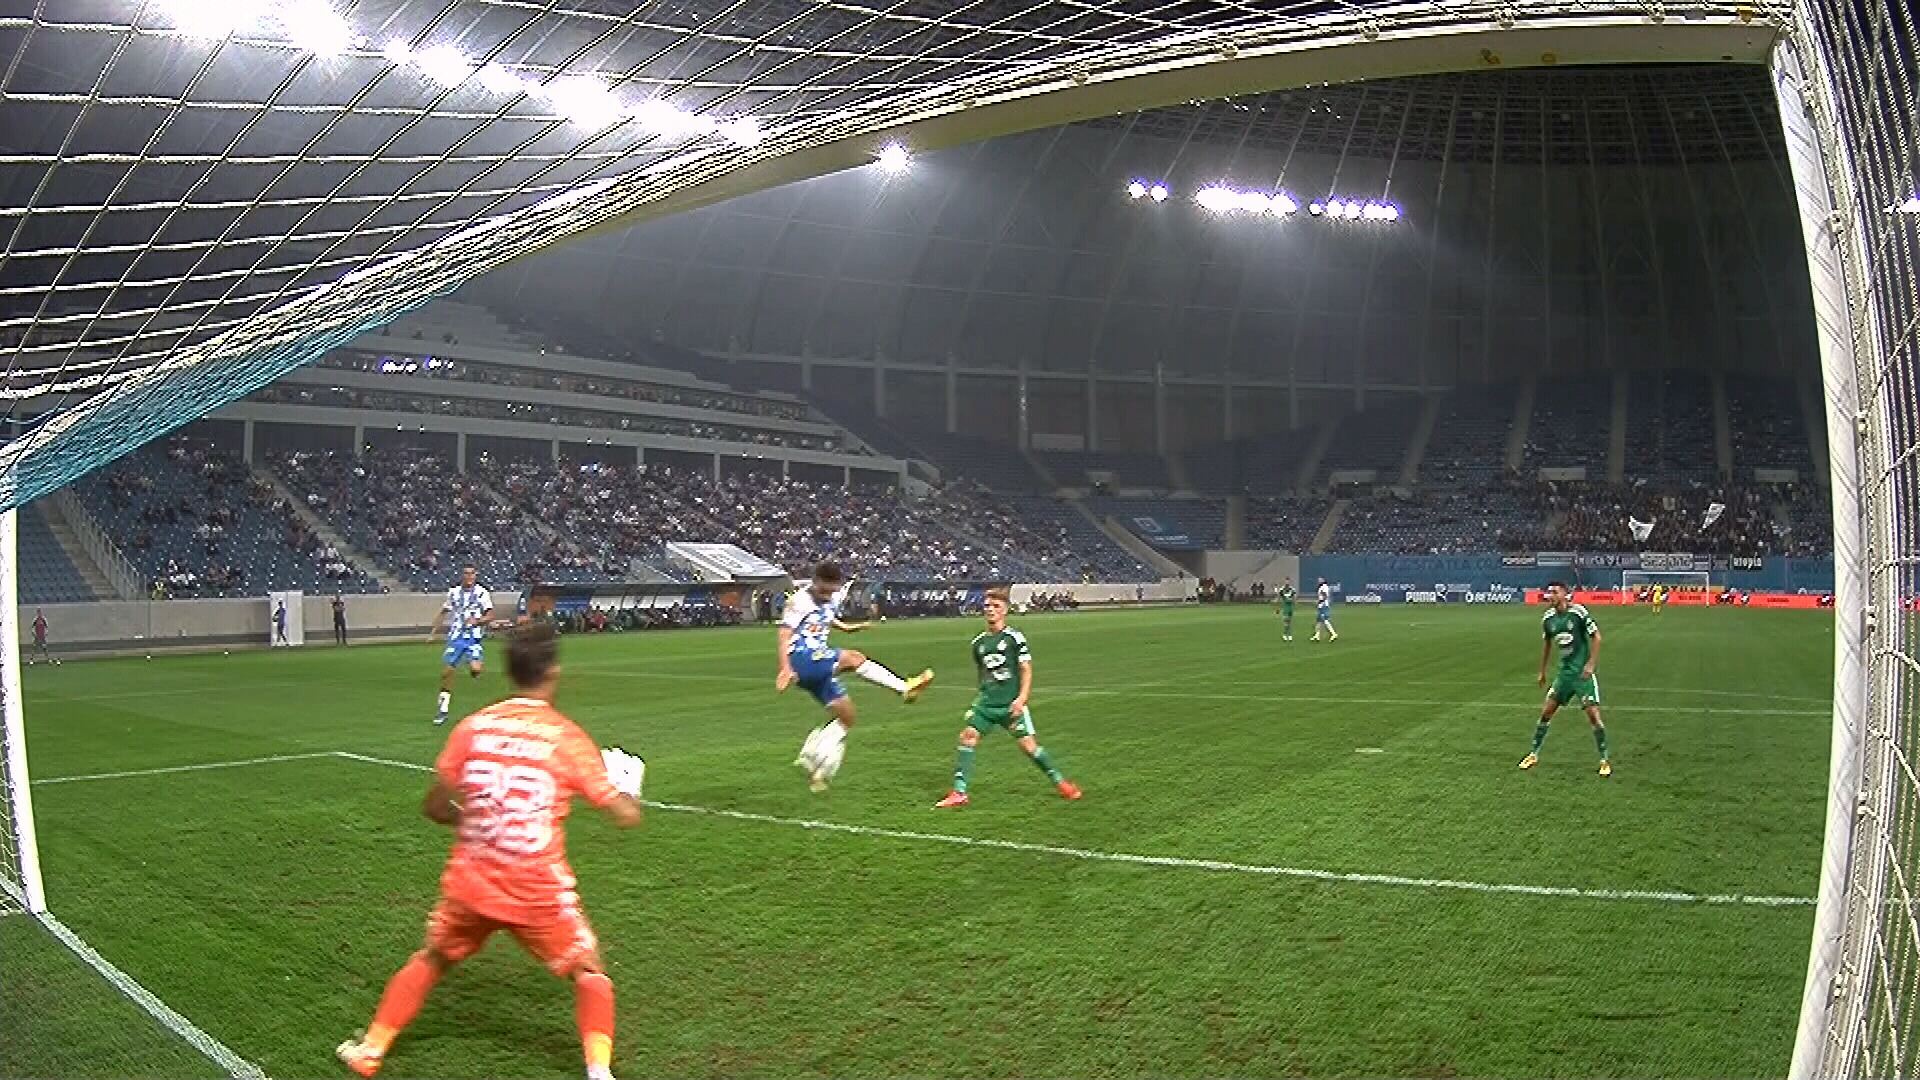 Universitatea Craiova - Sepsi 1-1, ACUM, la Digi Sport 1. Gustavo egalează cu un gol dintr-o poziție suspectă de ofsaid